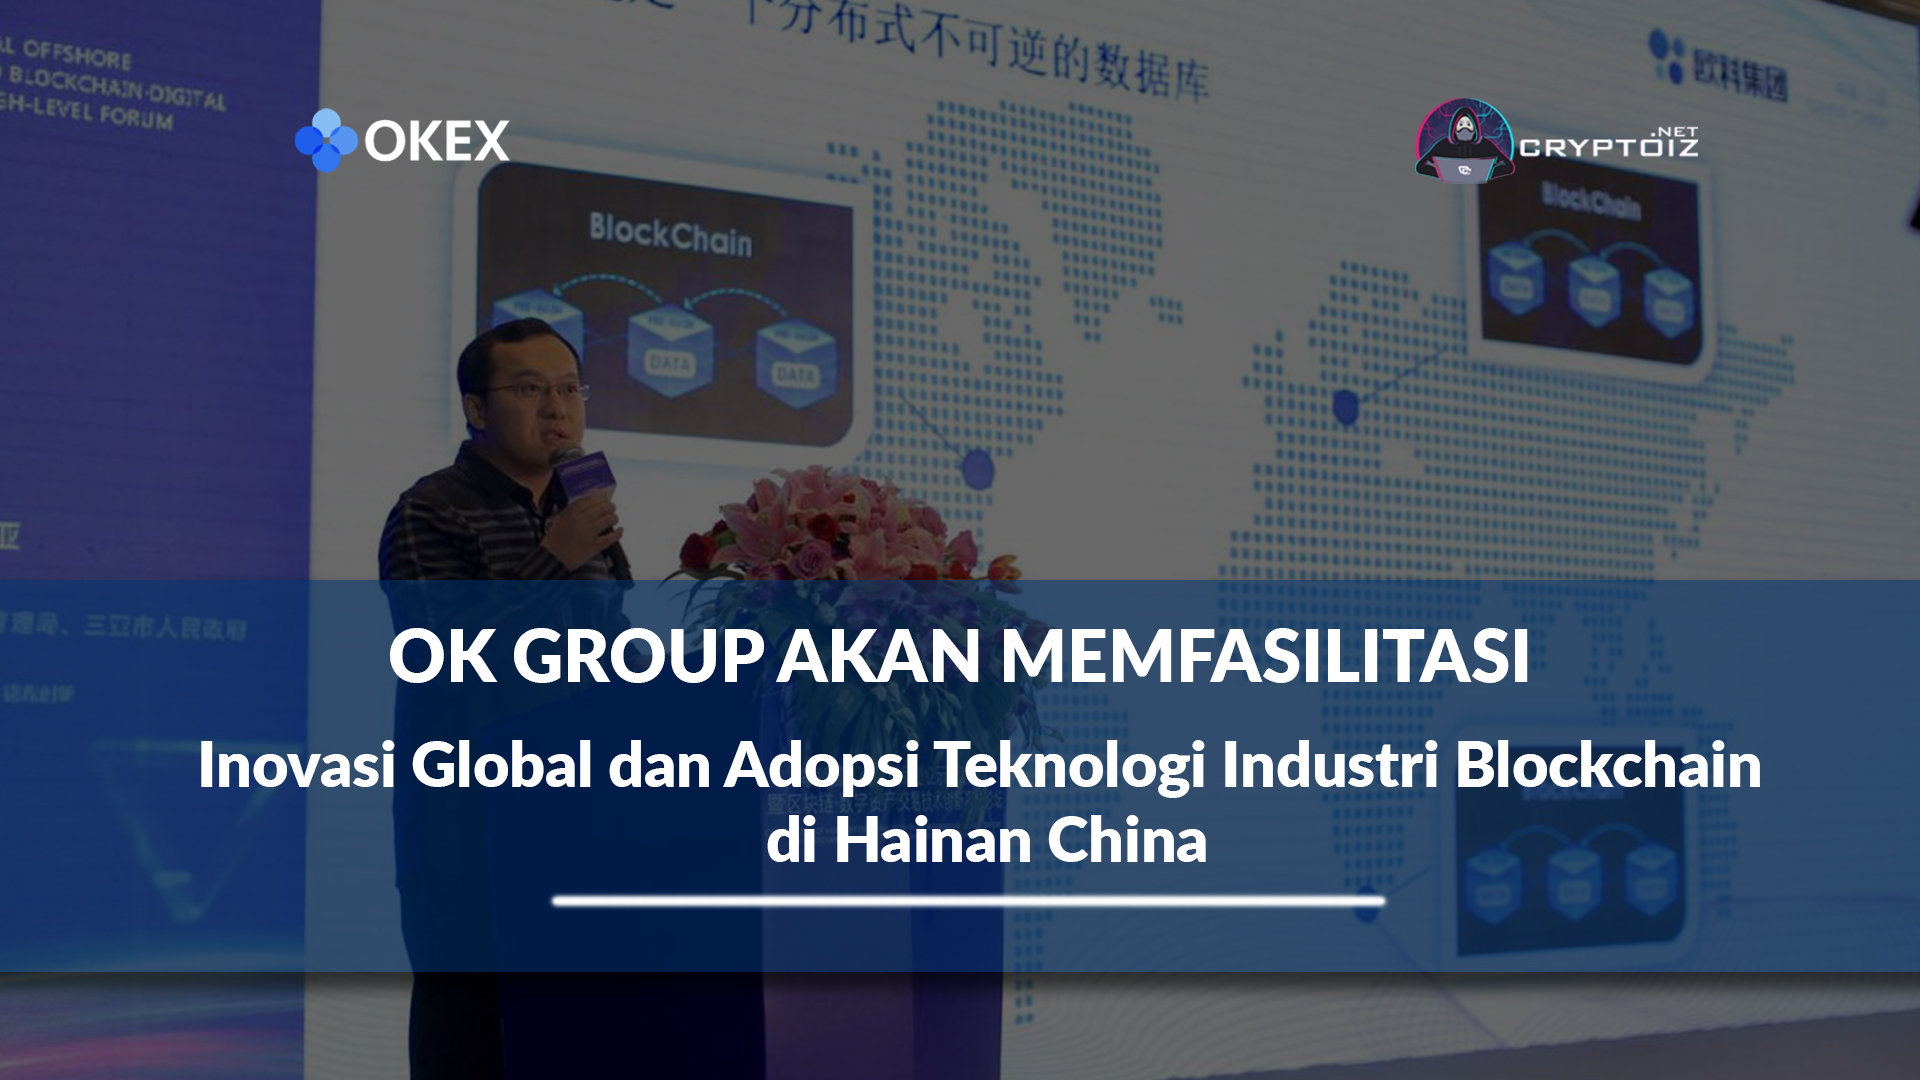 OK Group Akan Memfasilitasi Inovasi Global dan Adopsi Teknologi Industri Blockchain di Hainan China